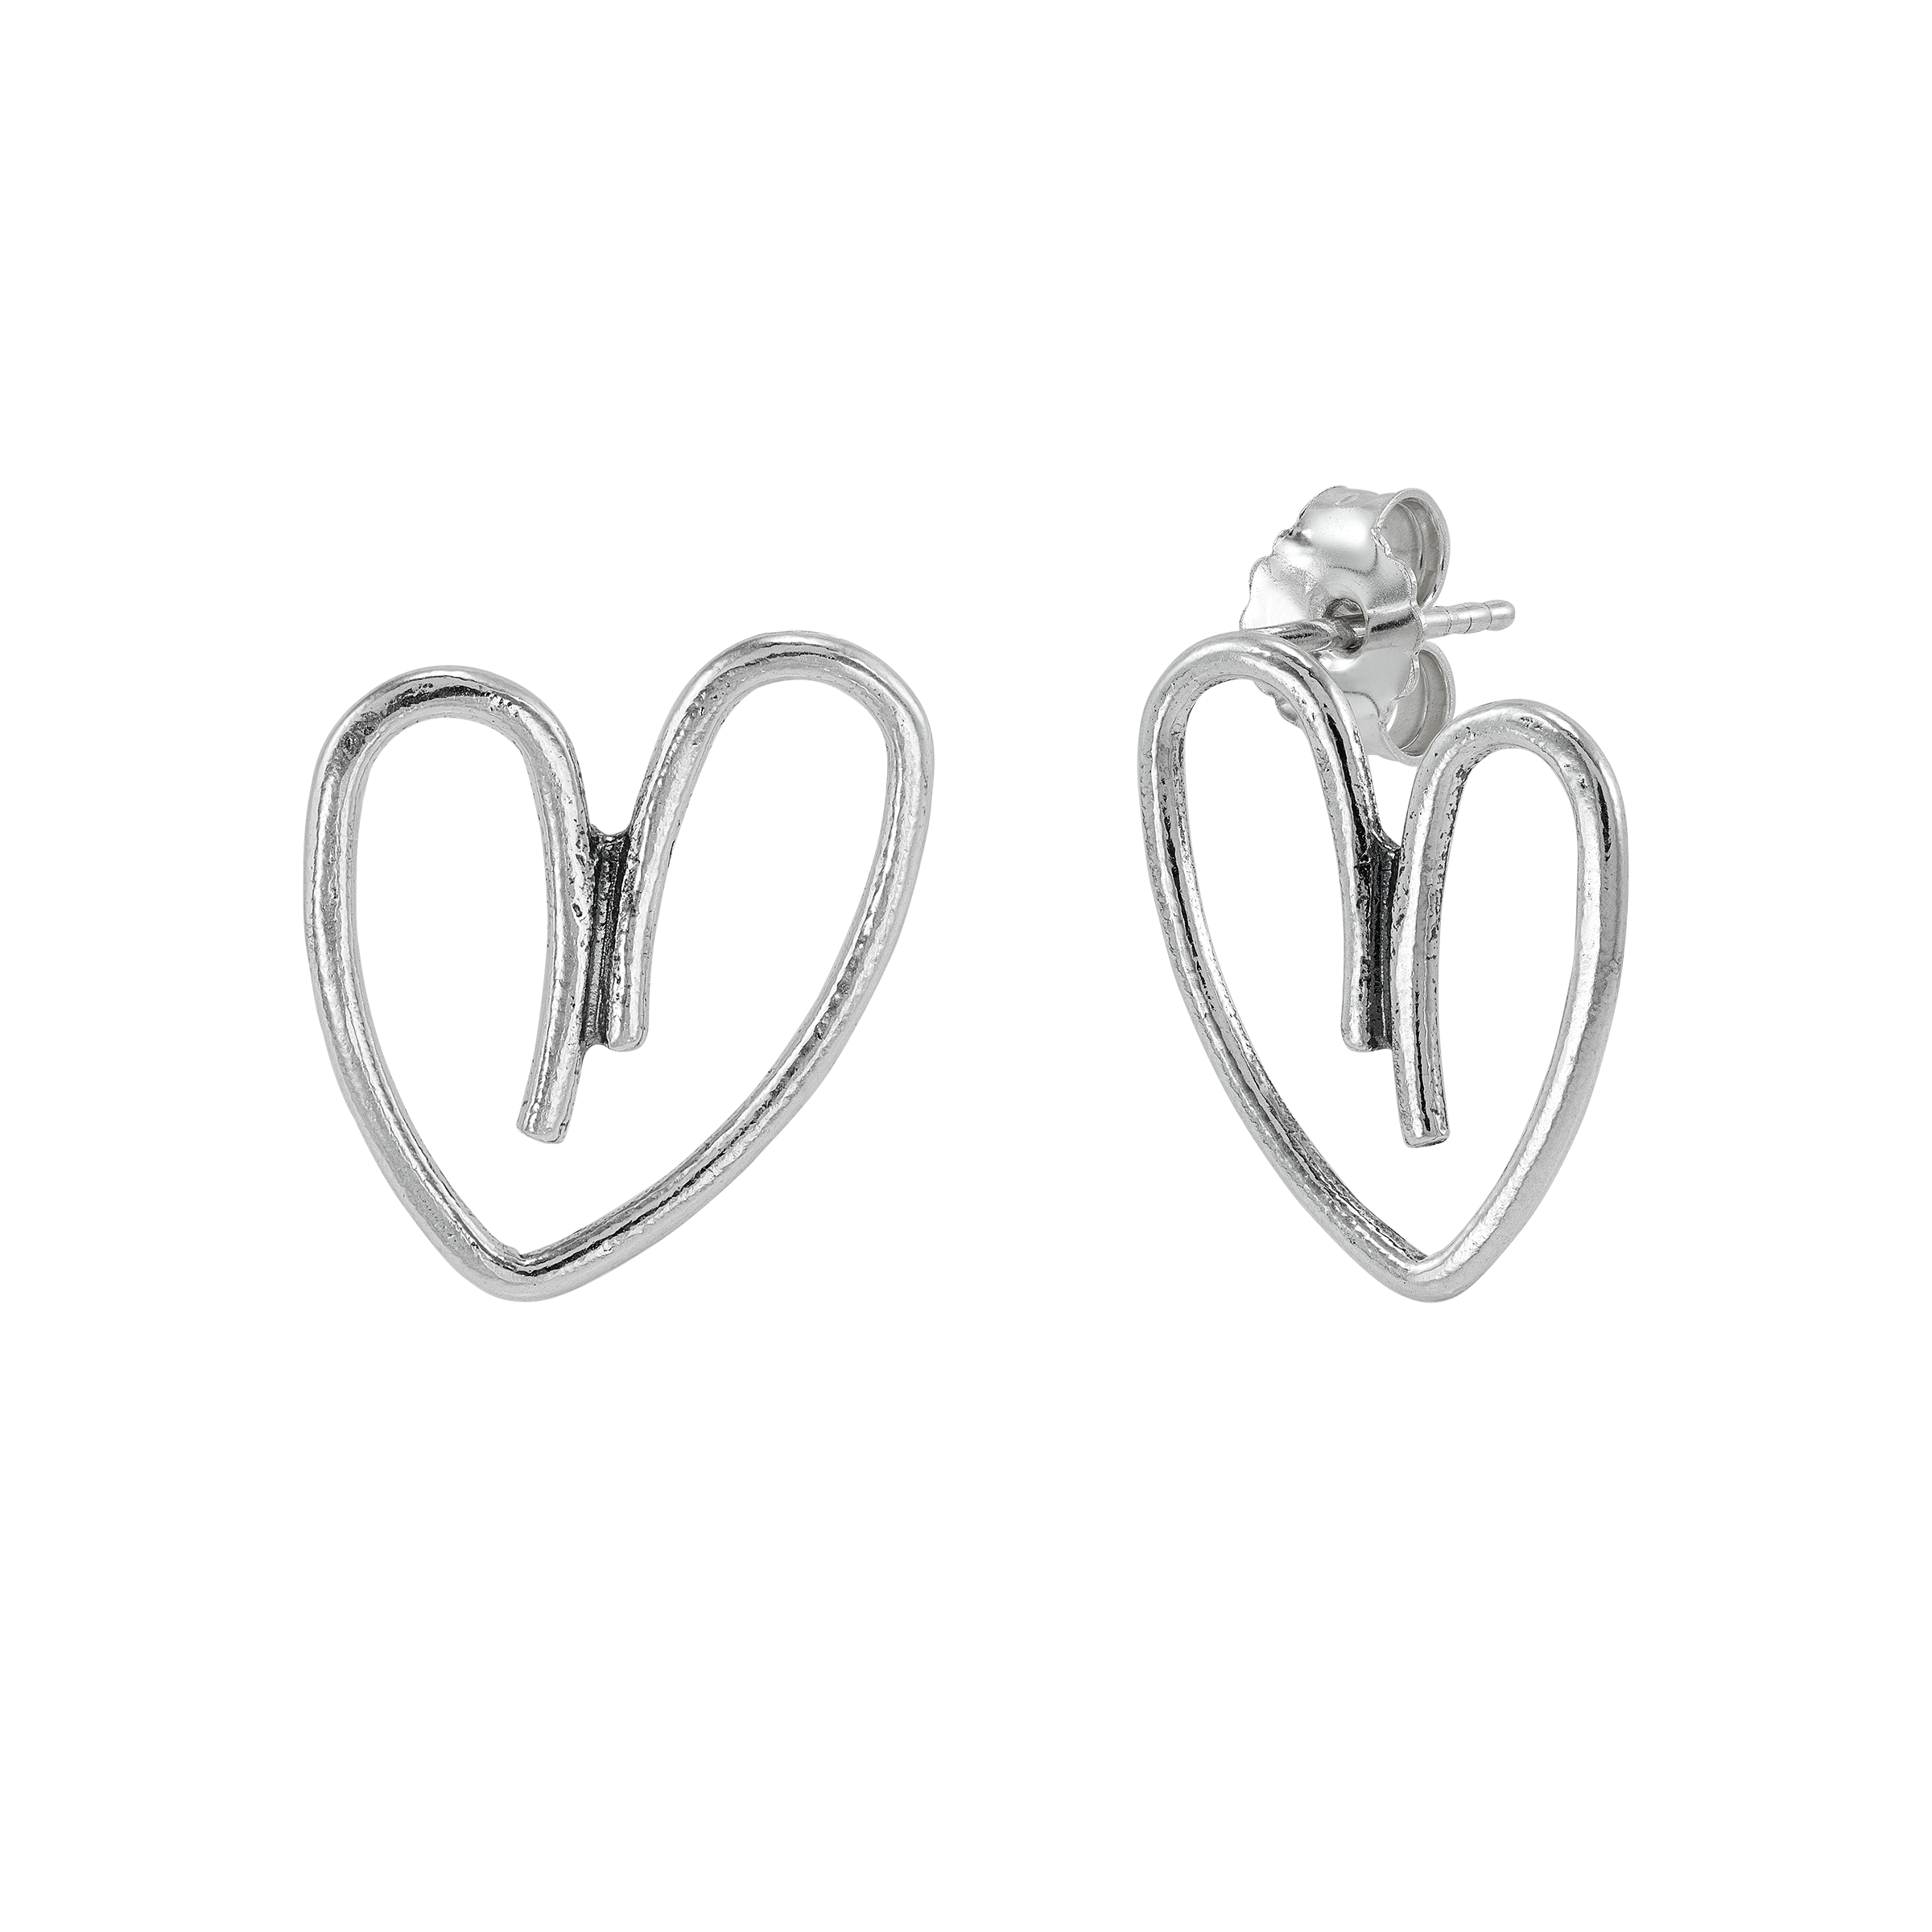 Silpada 'Heartfelt Love' Sterling Silver Stud Earrings | Silpada